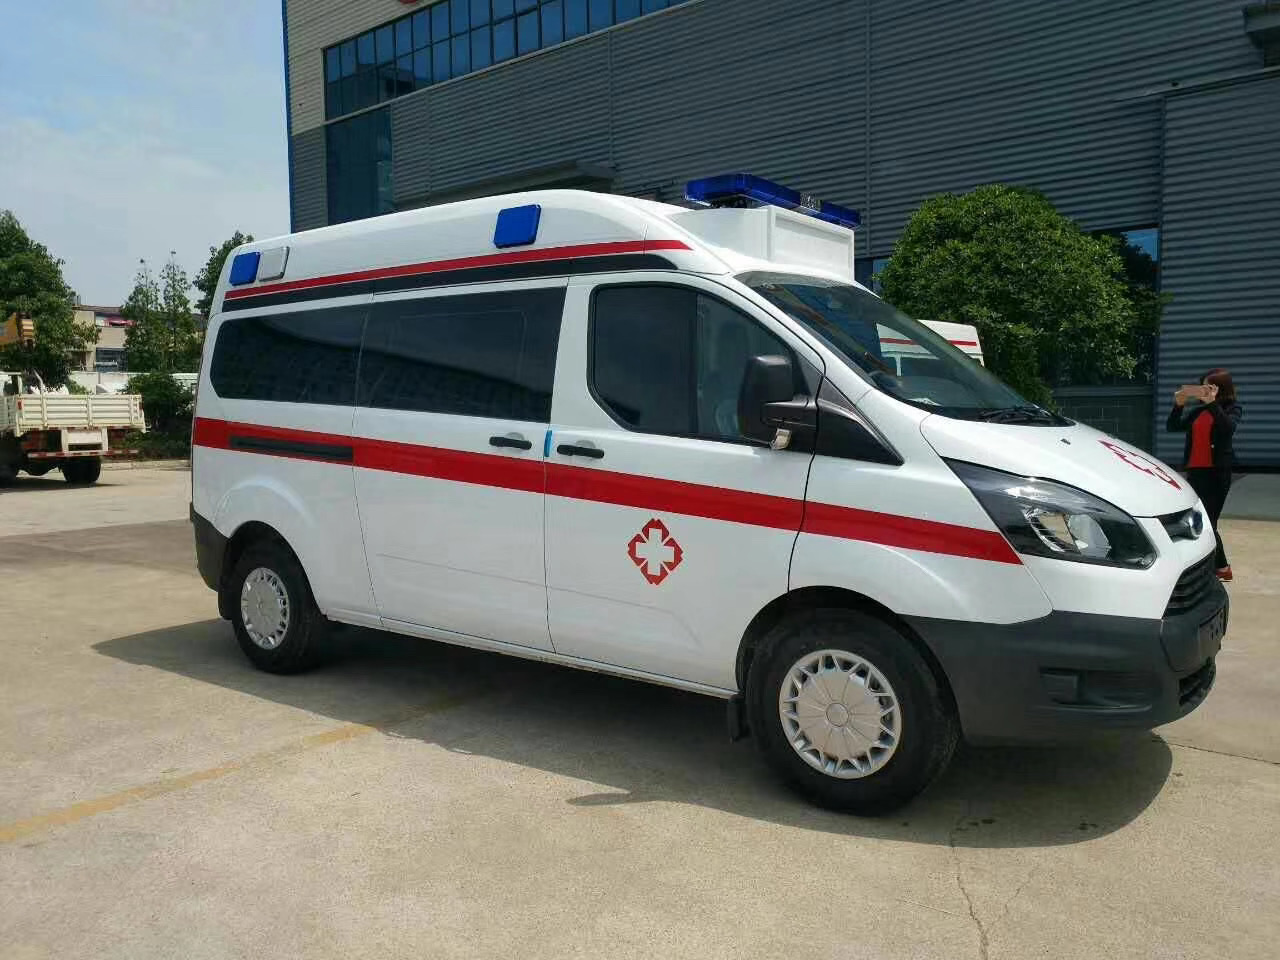 泰顺县出院转院救护车